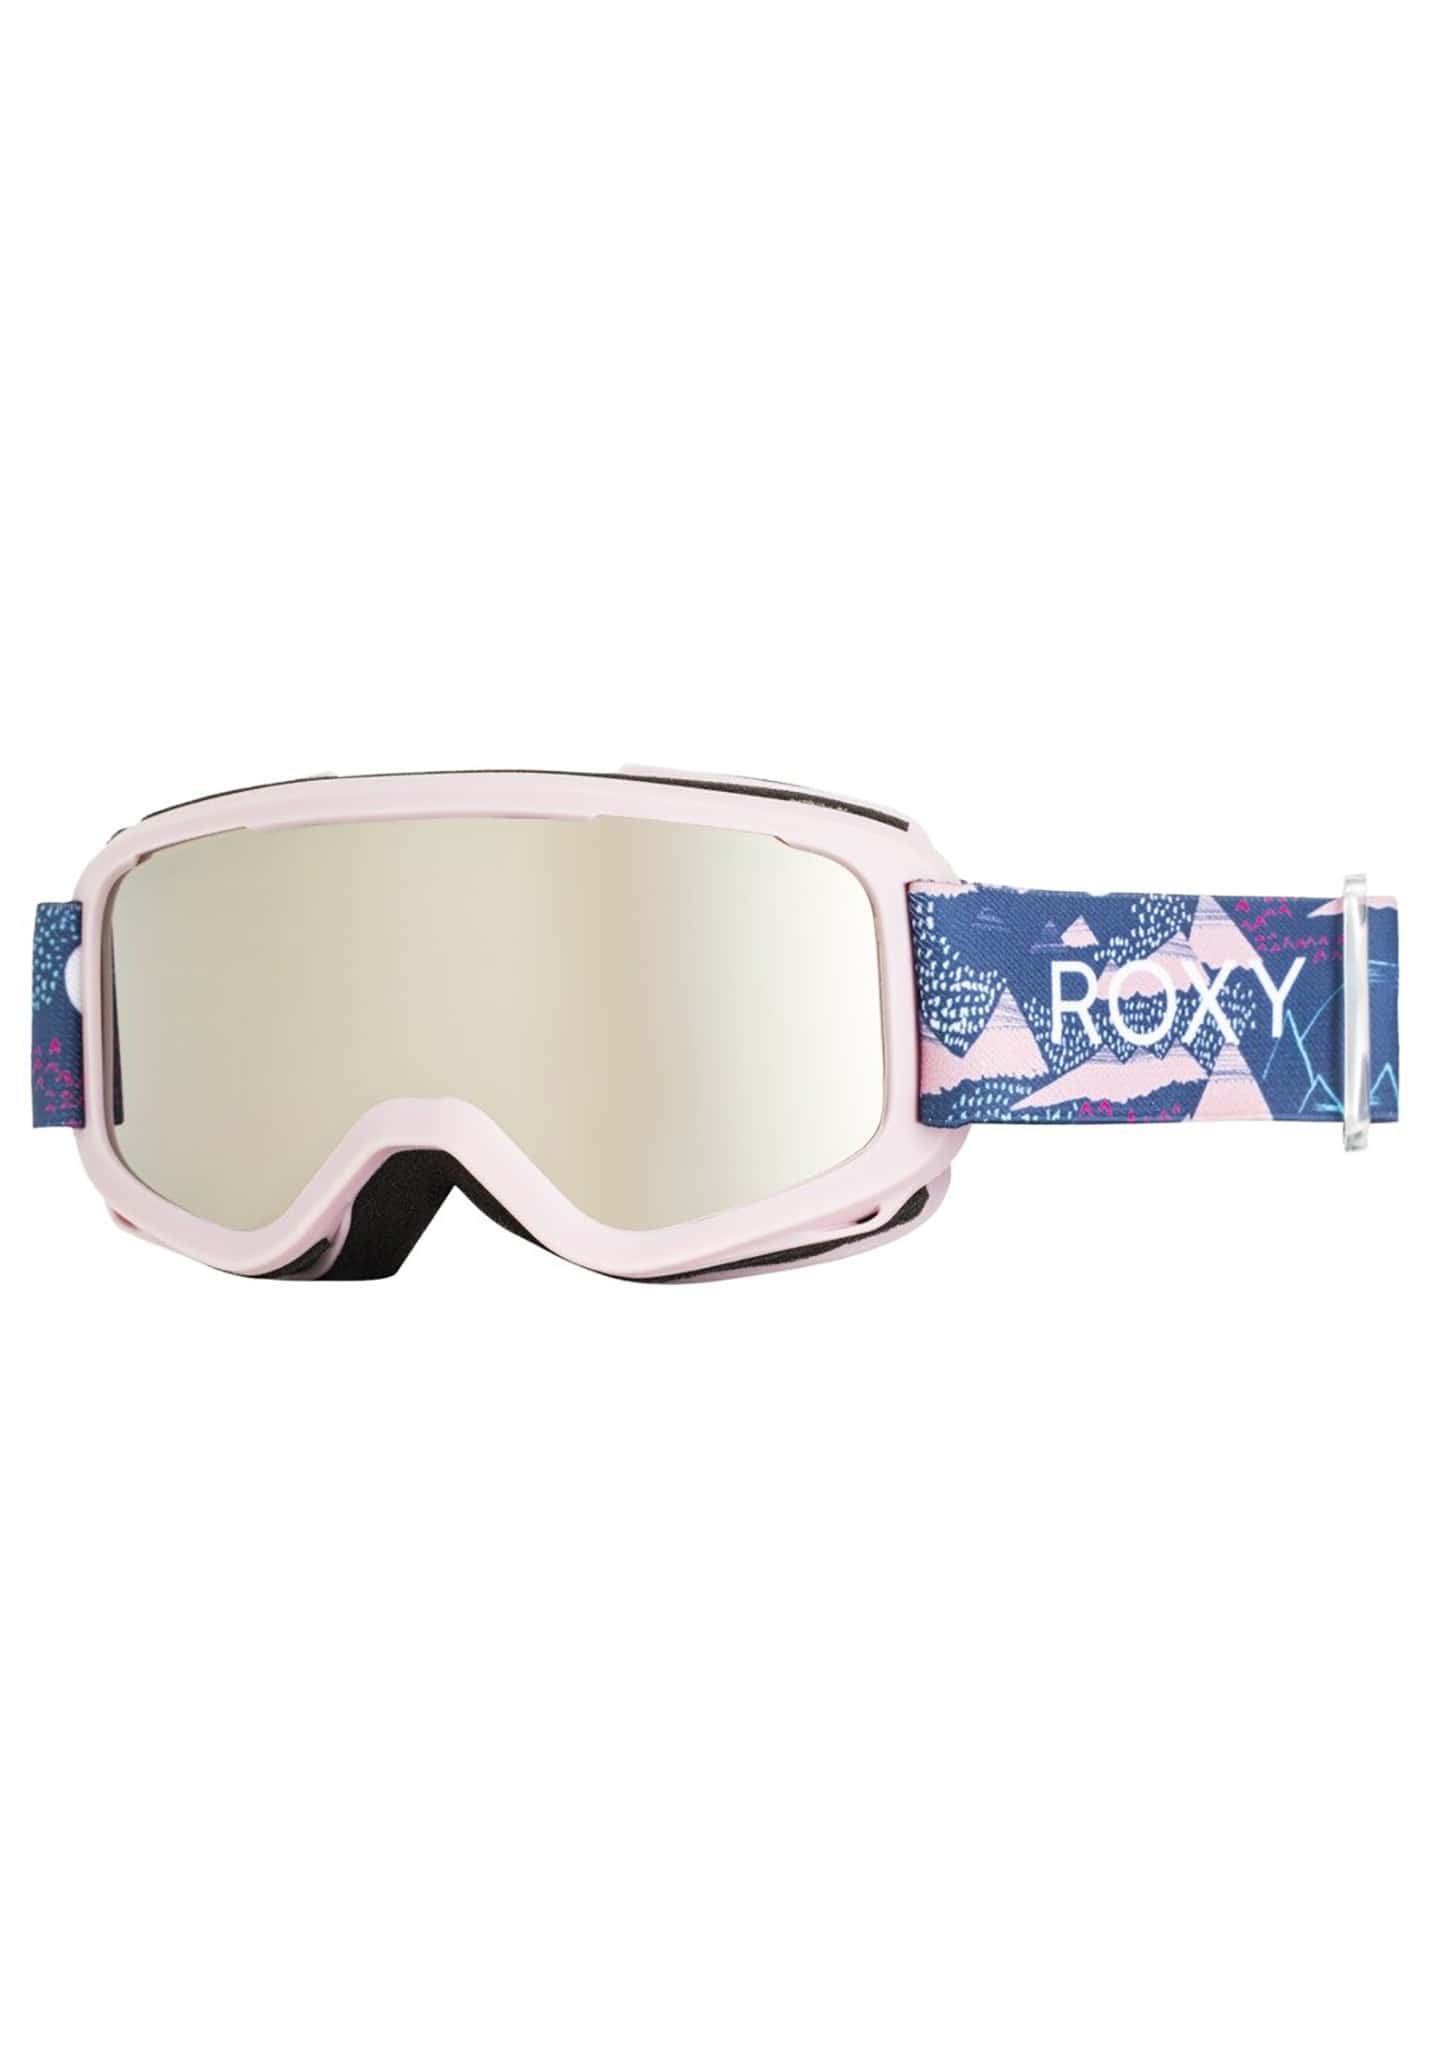 Roxy Sweetpea Snowboardbekleidung mittelalterlicher blaufränkisch One Size